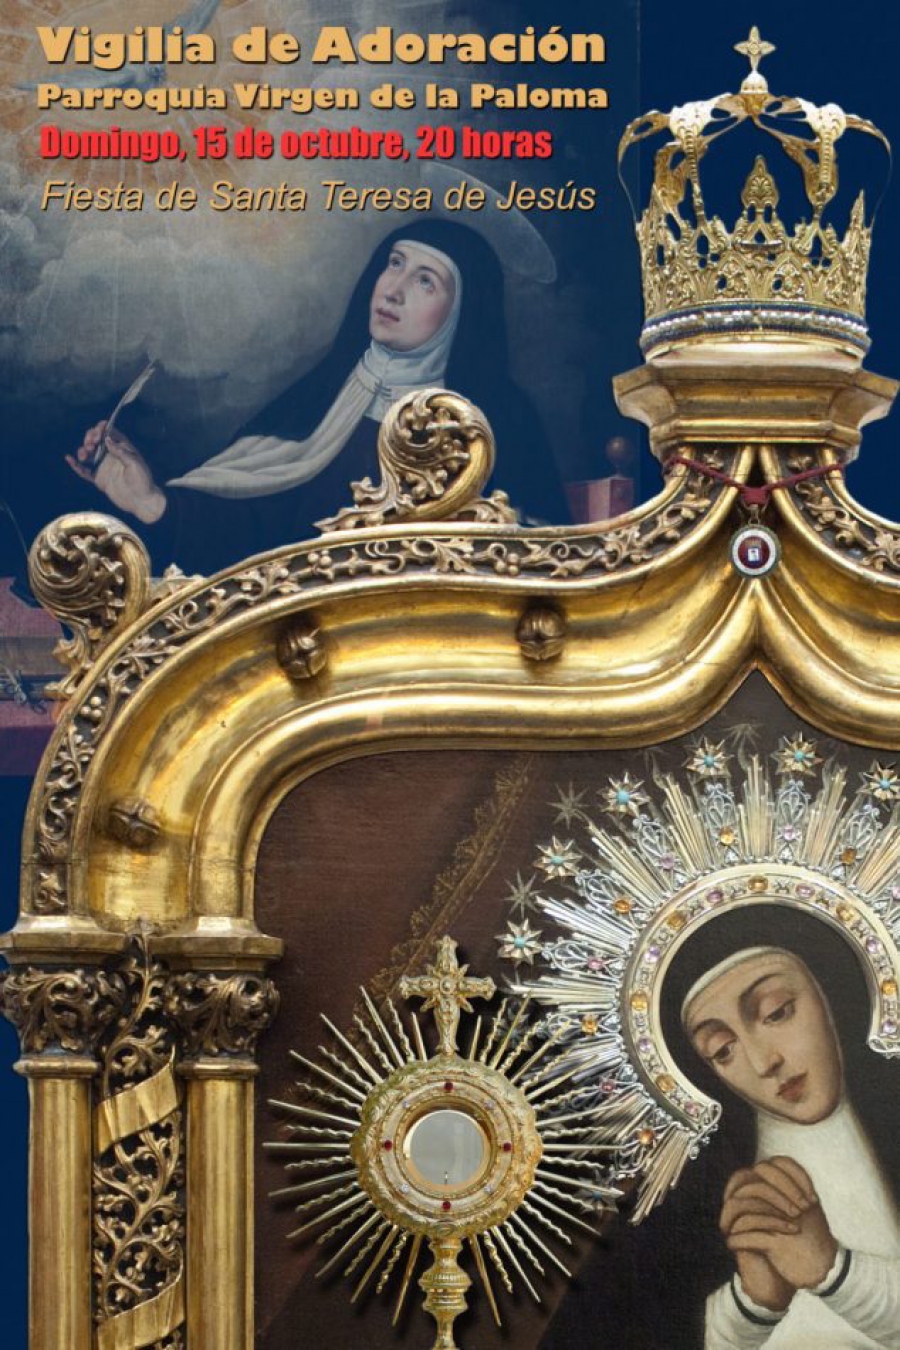 La parroquia de la Paloma organiza una vigilia de oración en la fiesta de santa Teresa de Jesús